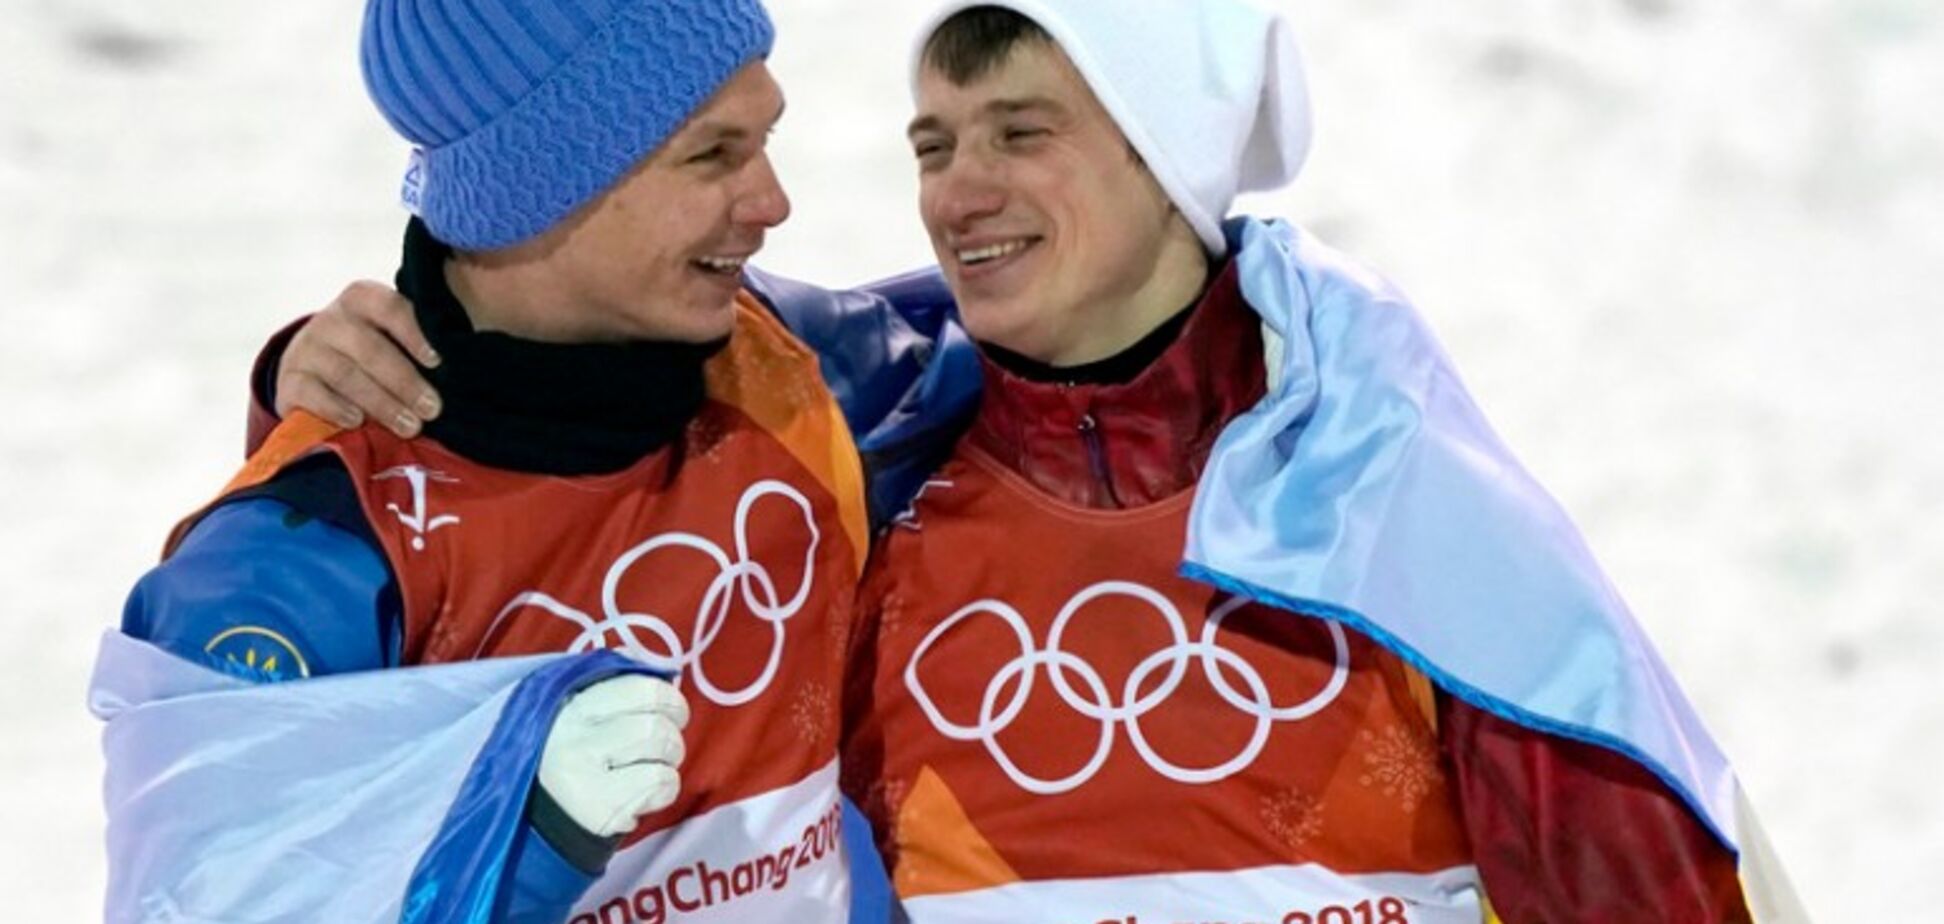 Не может украинский олимпийский чемпион обниматься с россиянином